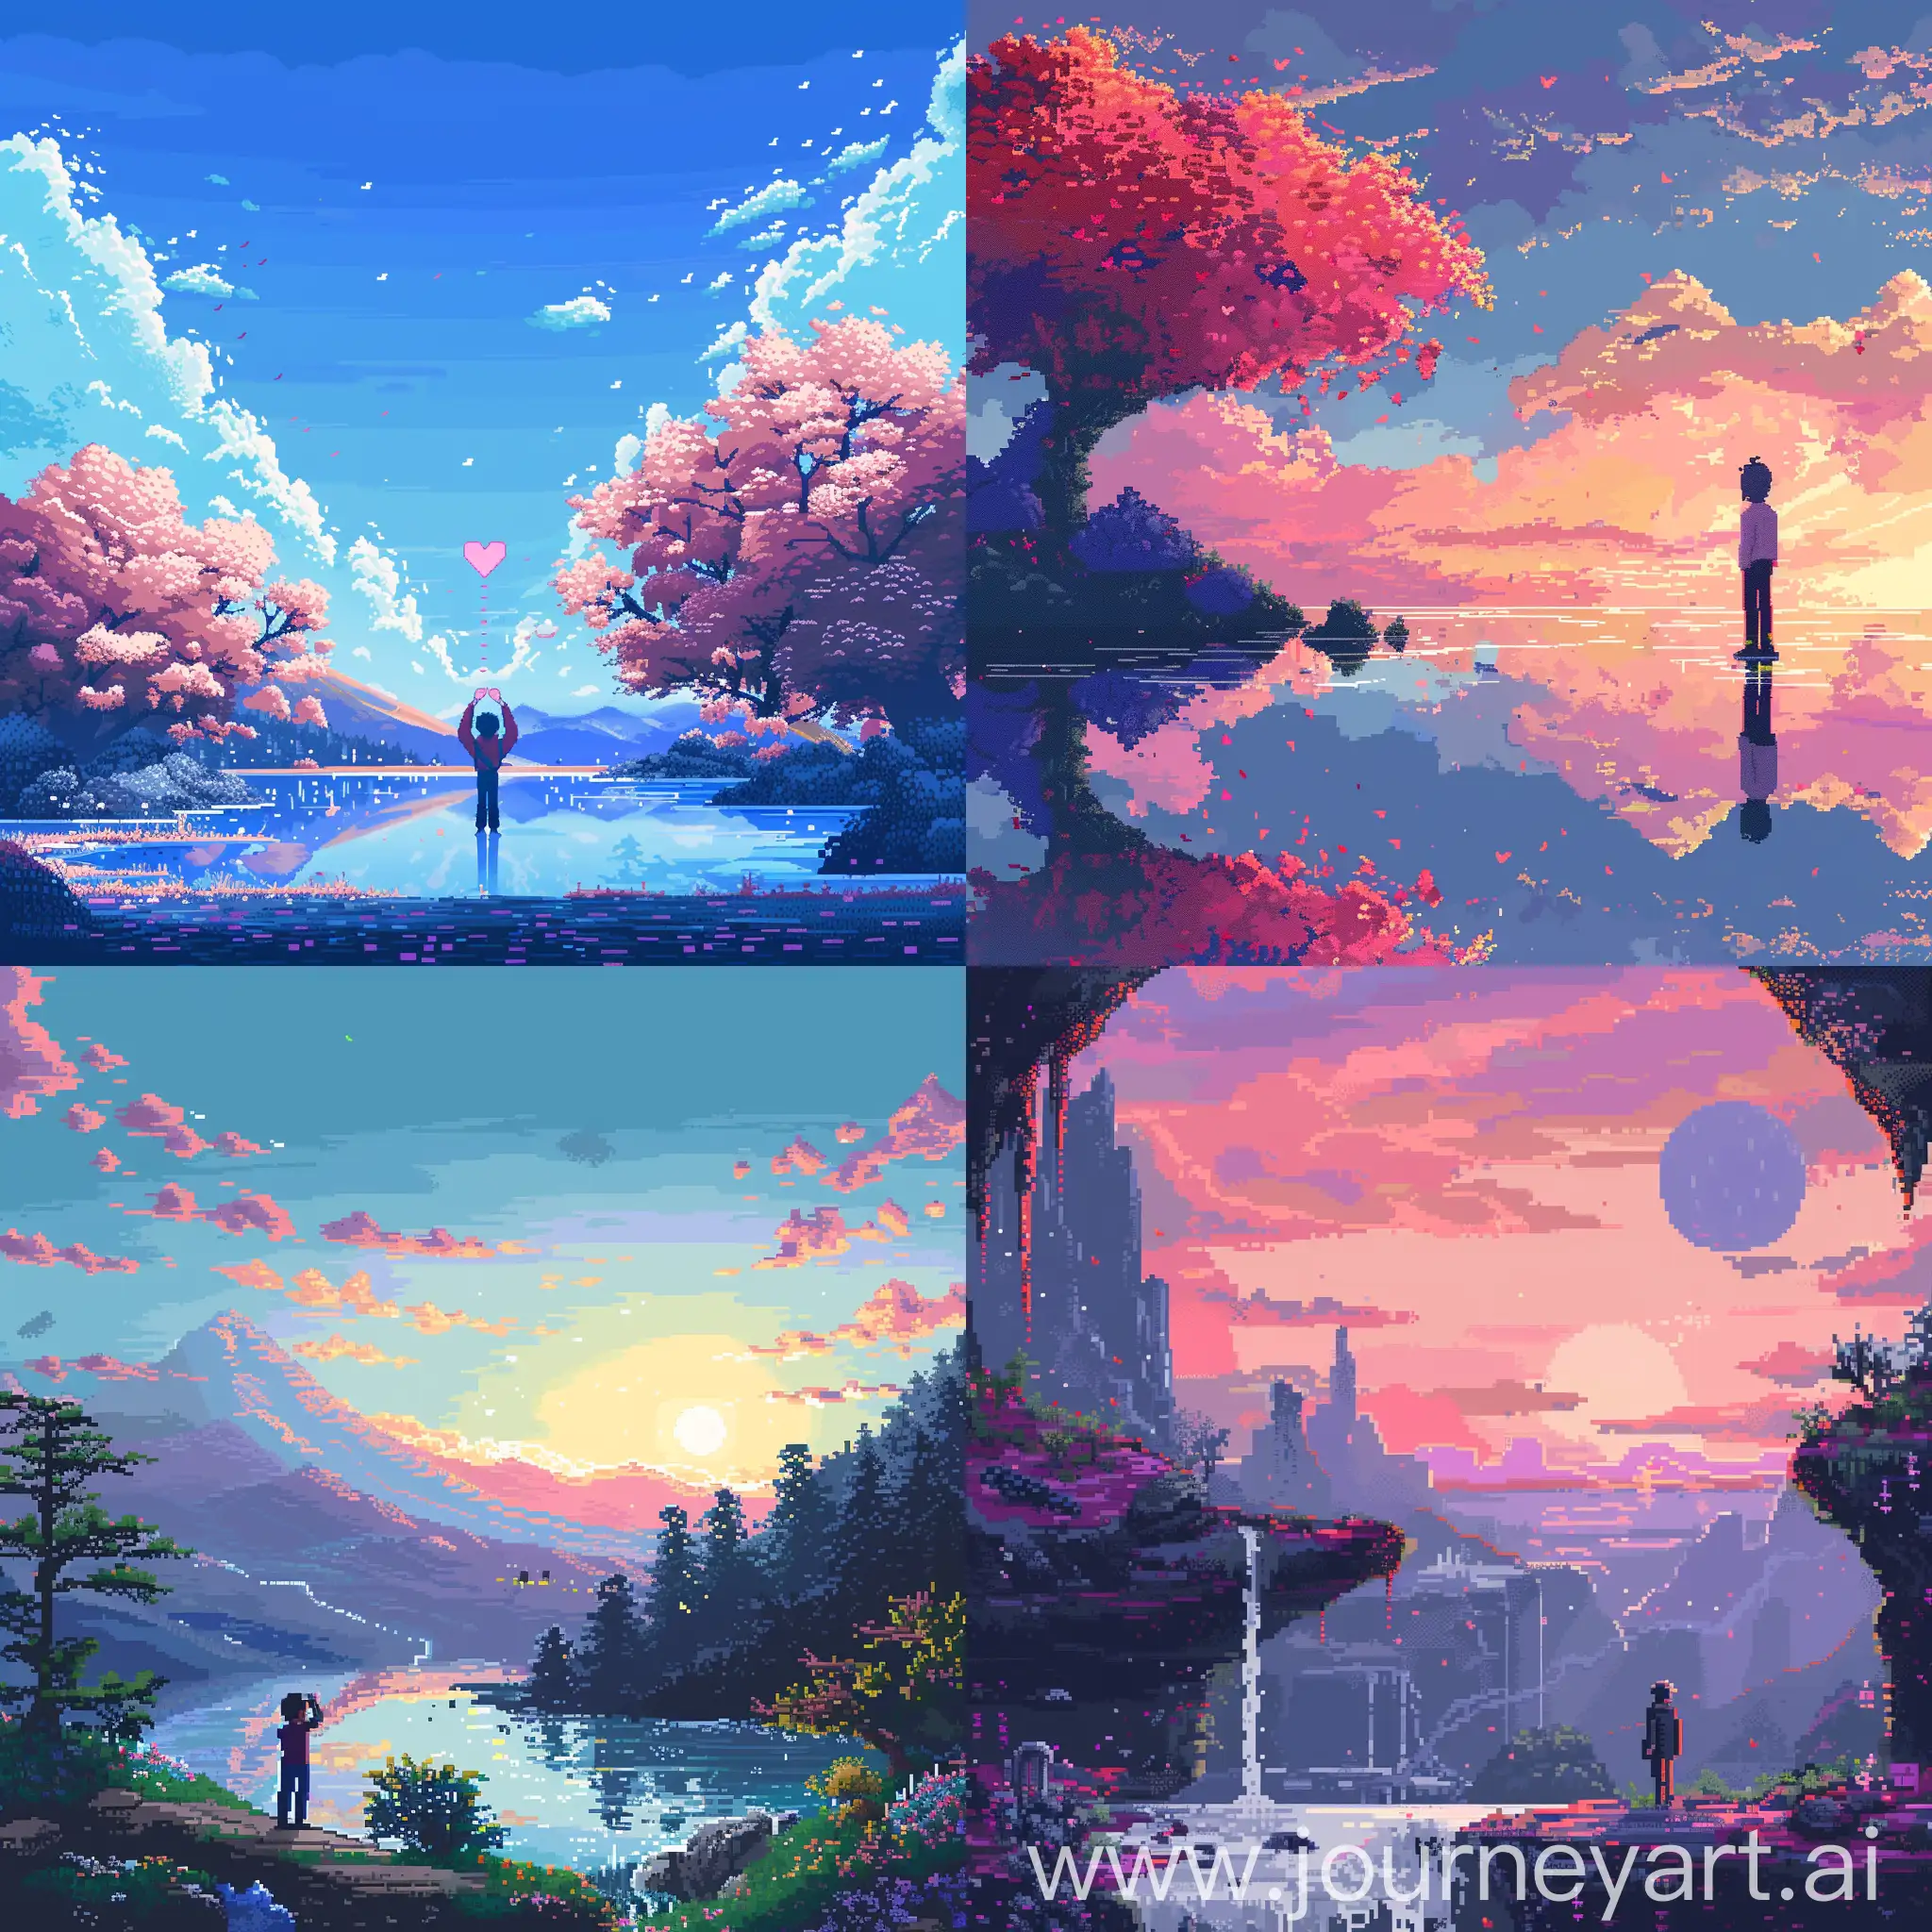 en pixel art, créer moi une personne faisant une declaration d'amour avec un jolie paysage chill